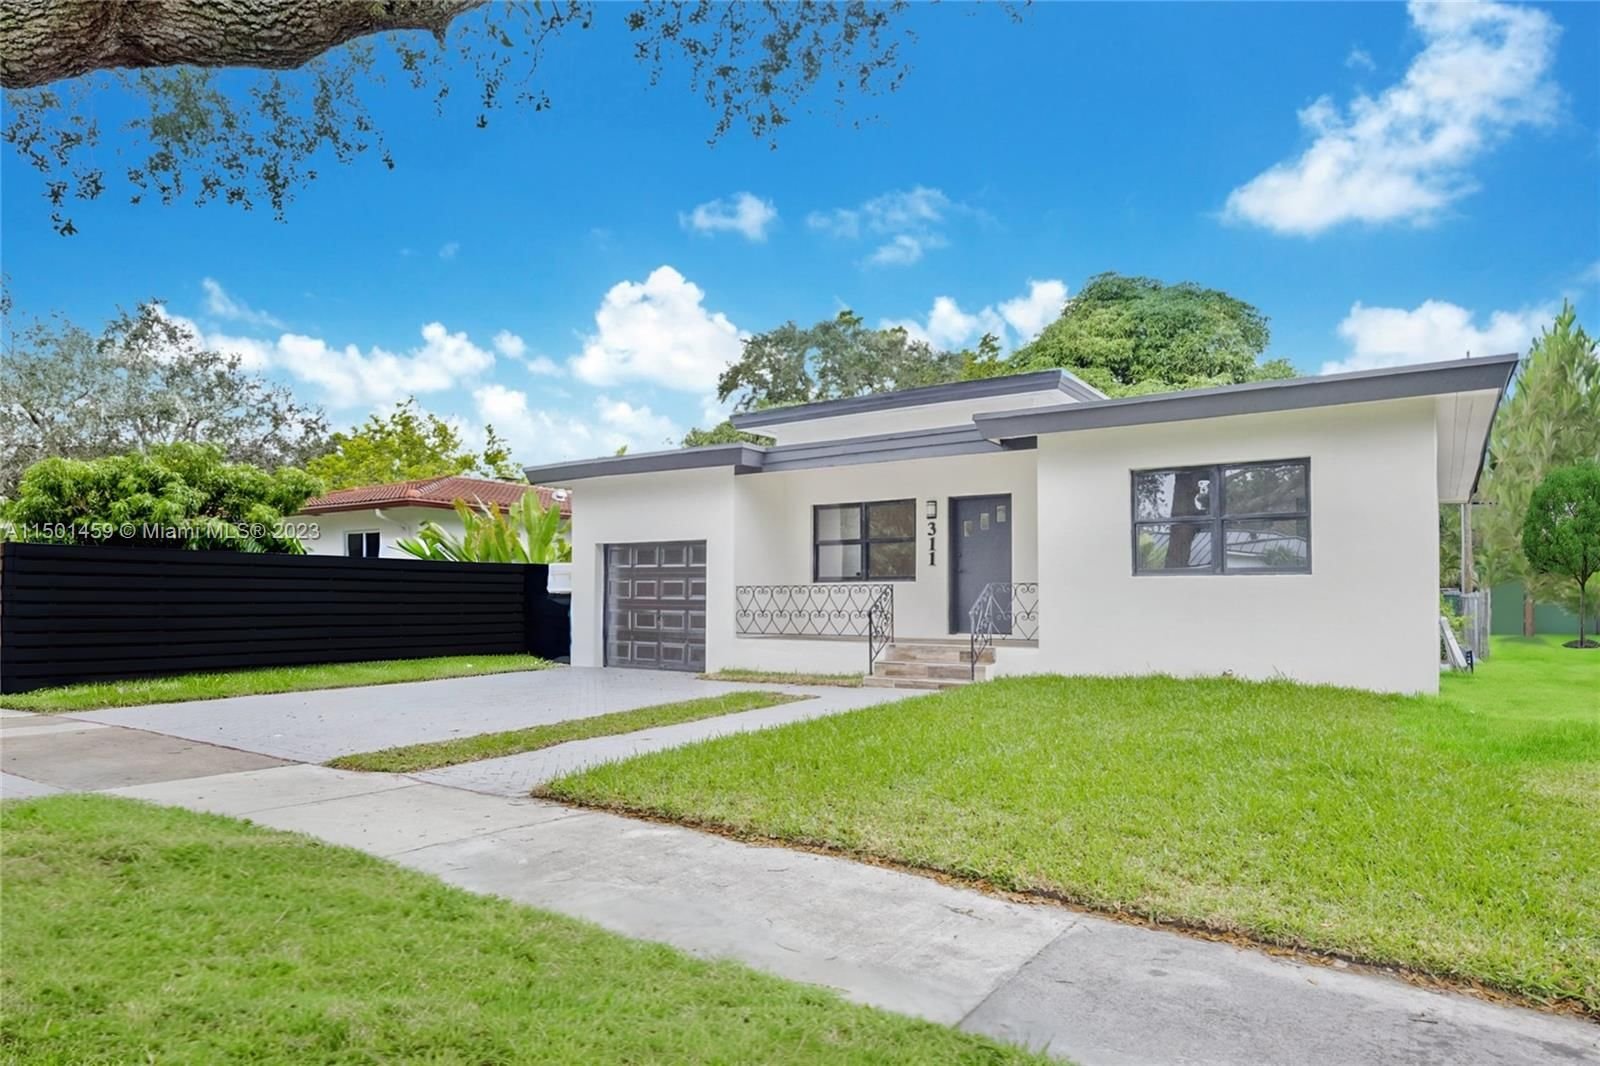 Real estate property located at 311 90th St, Miami-Dade County, EL PORTAL, Miami, FL